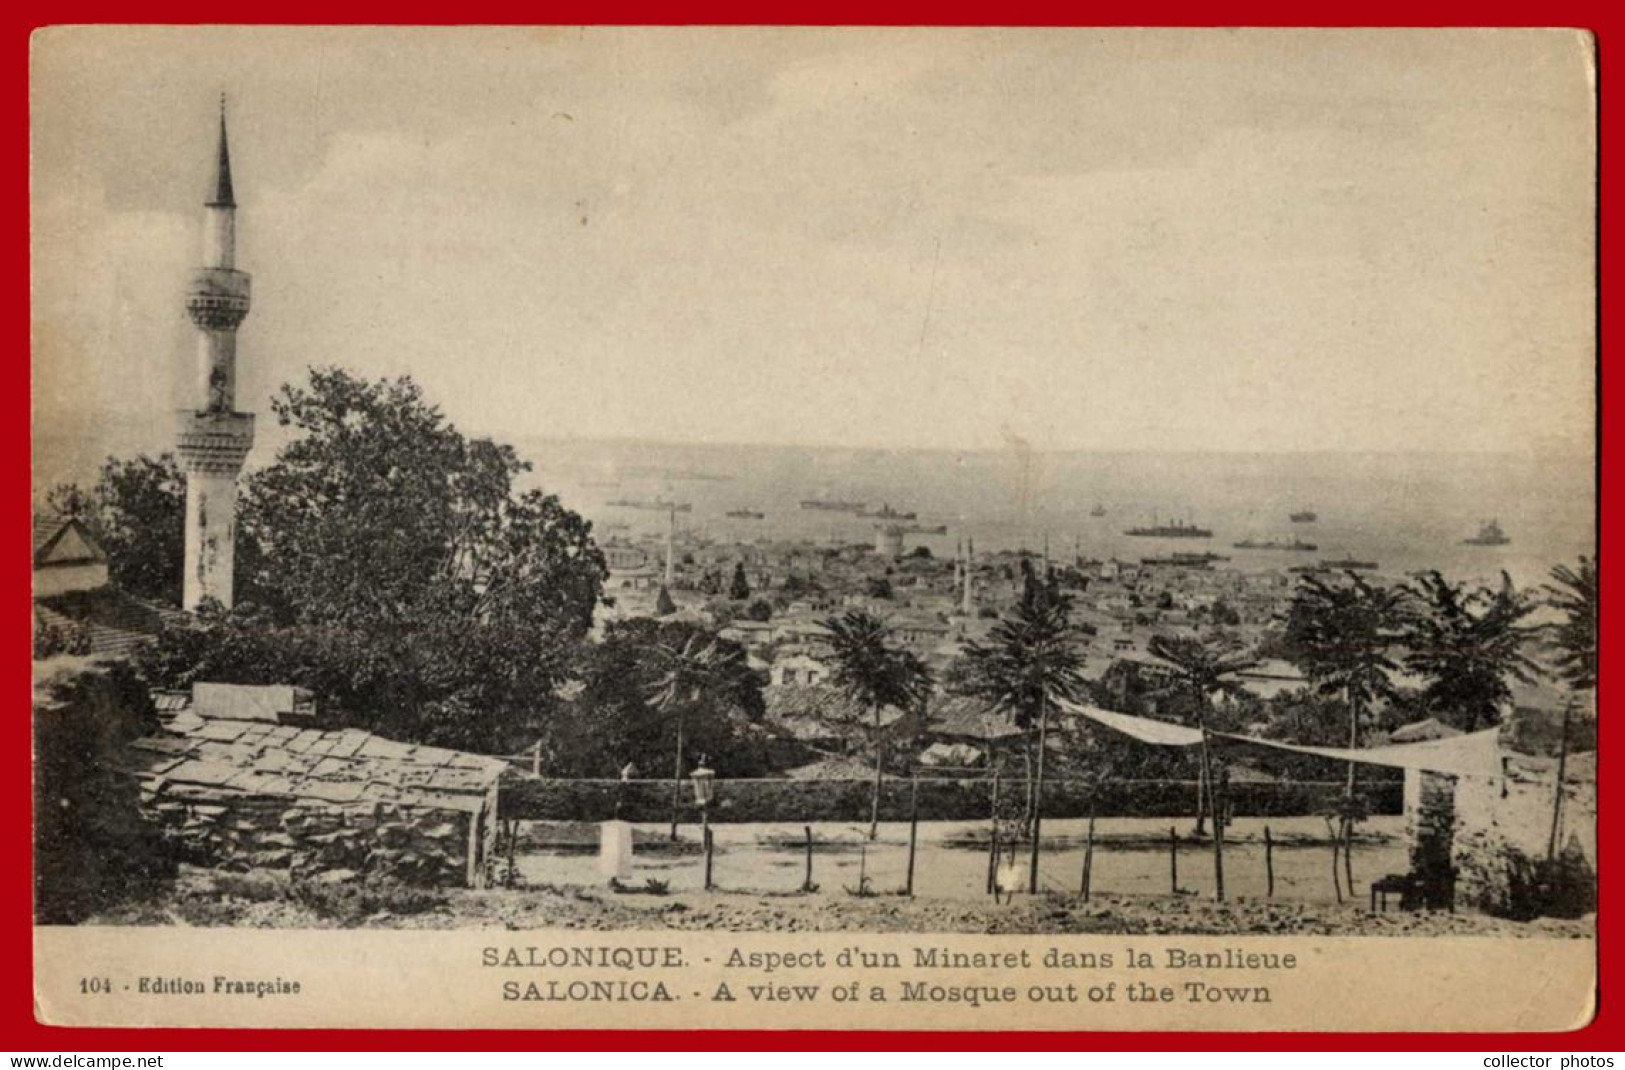 THESSALONIKI Salonica Greece 1910s (circa WWI). Lot of 8 vintage used postcards [de134]